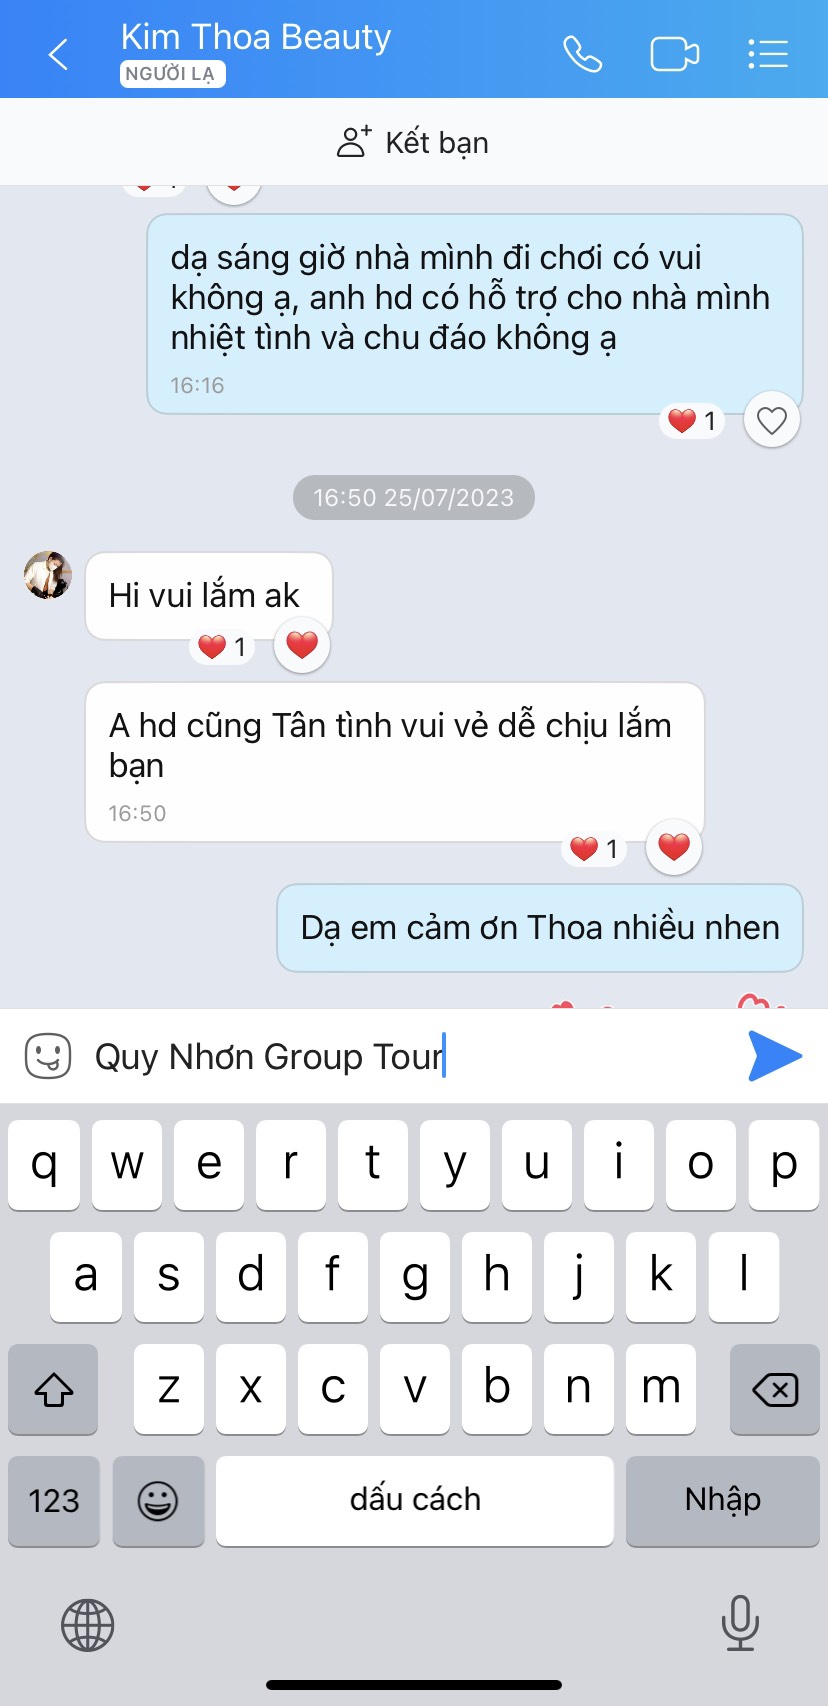 Tour Bảo Tàng Quang Trung – Tây Sơn : 1 ngày nguyên cứu đất võ trời văn Quy  Nhơn